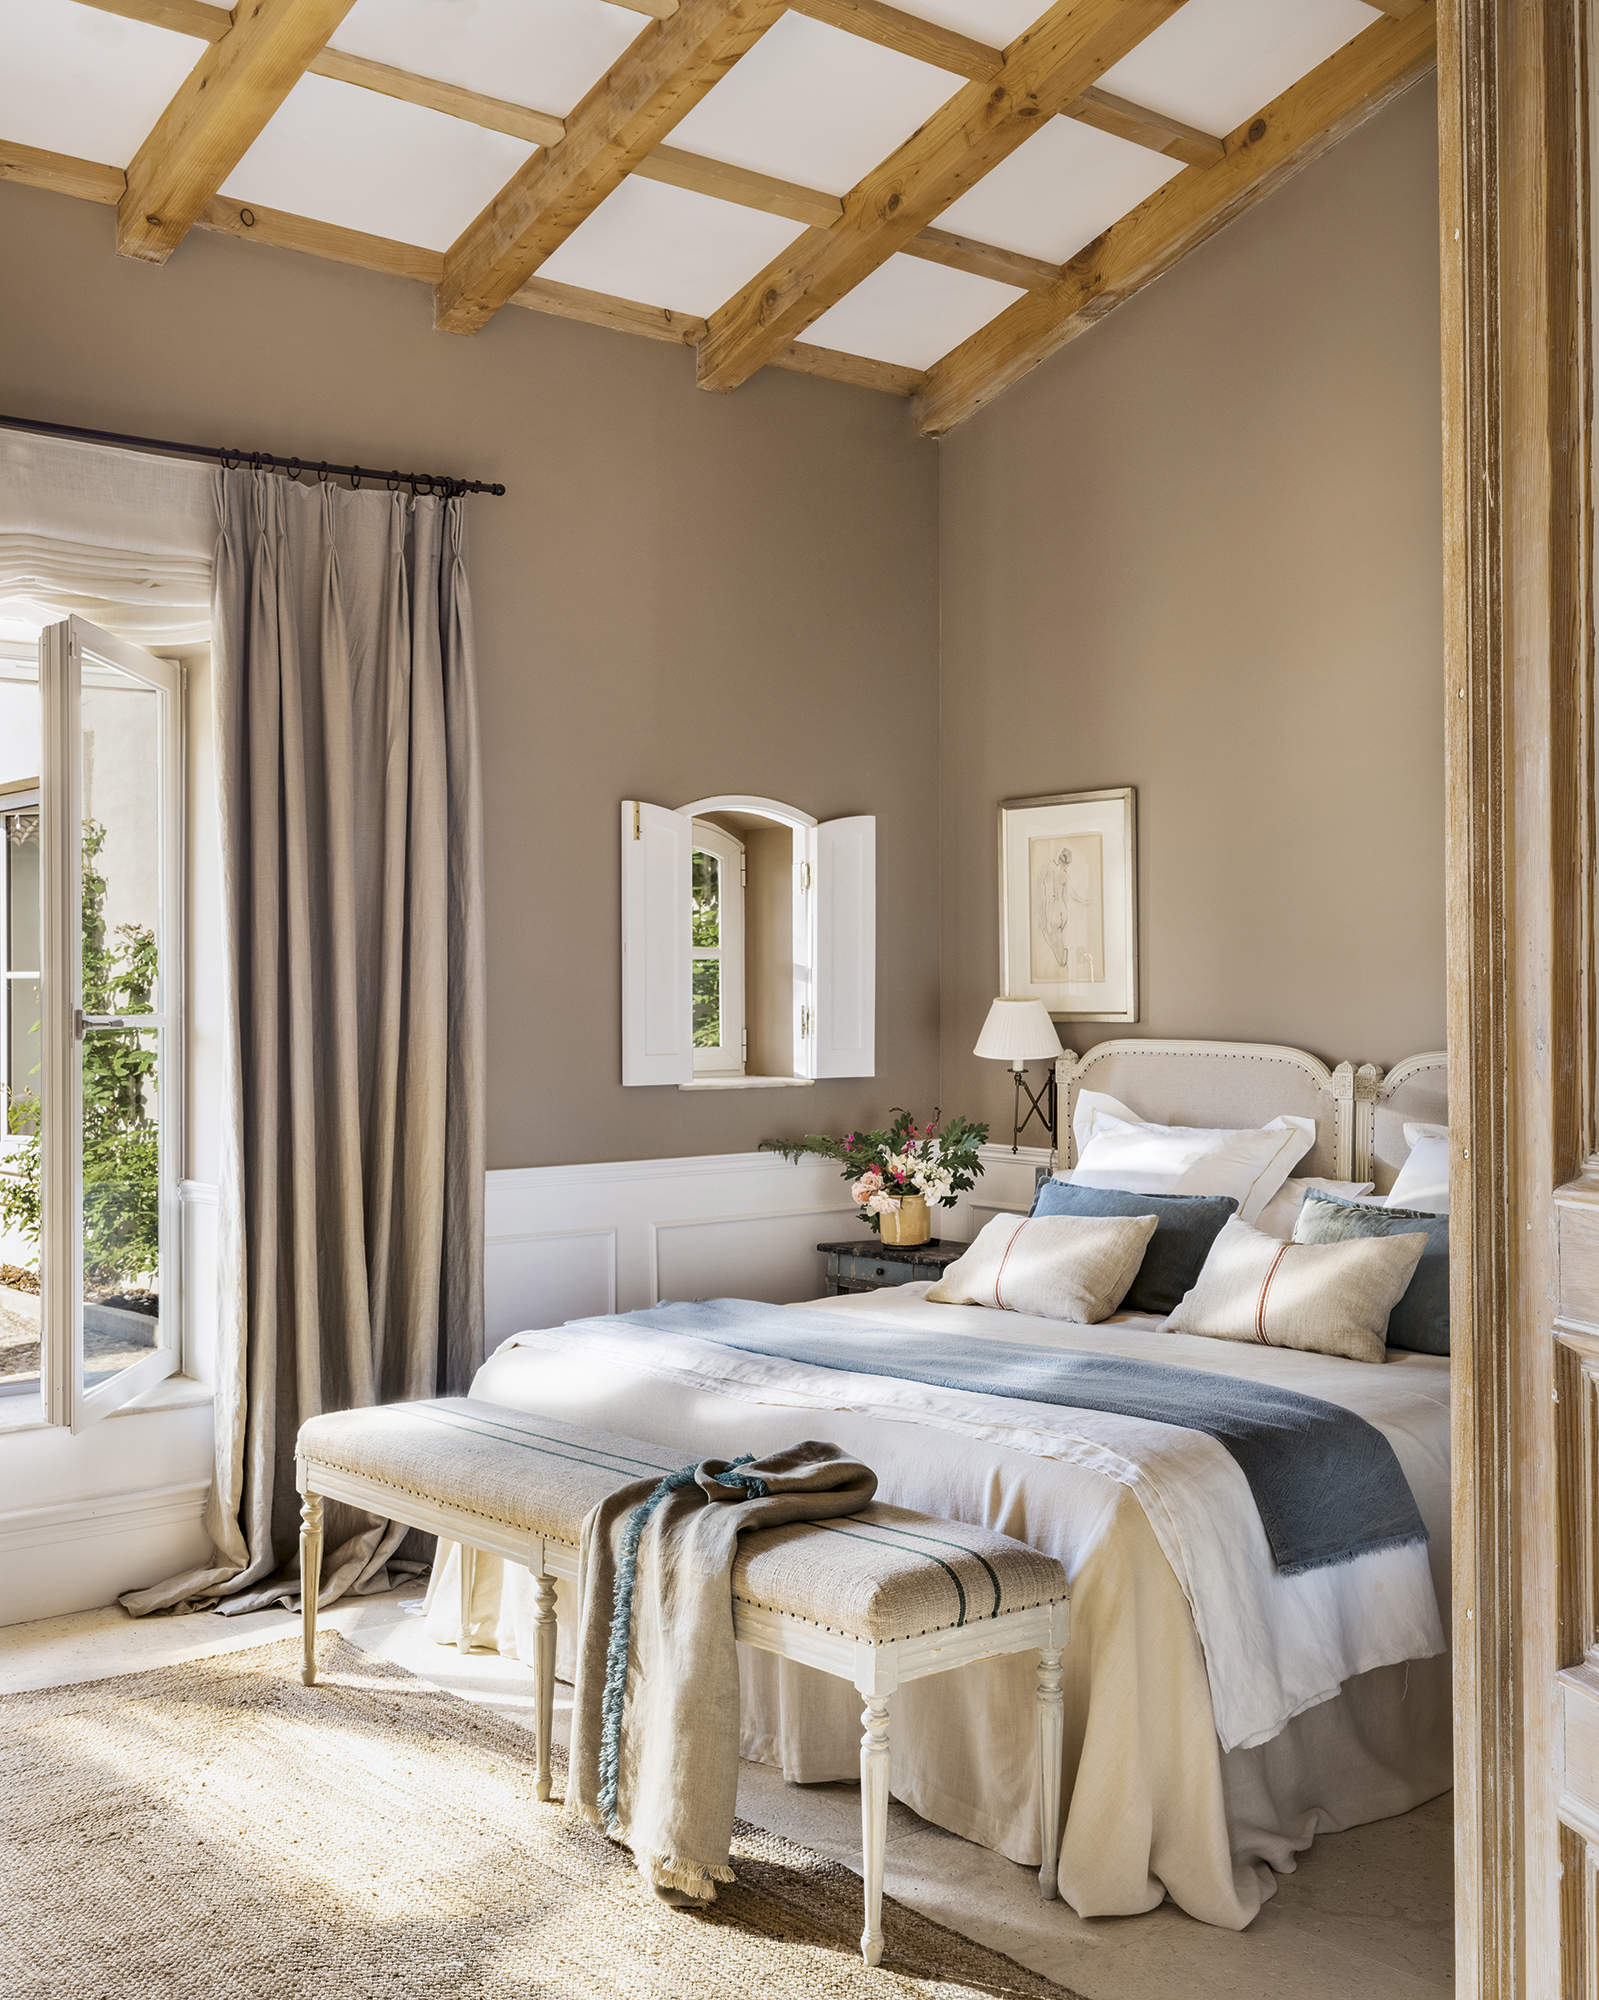 Dormitorio con vigas de madera, cabecero restaurado, cortinas de lino y arrimaderos blancos